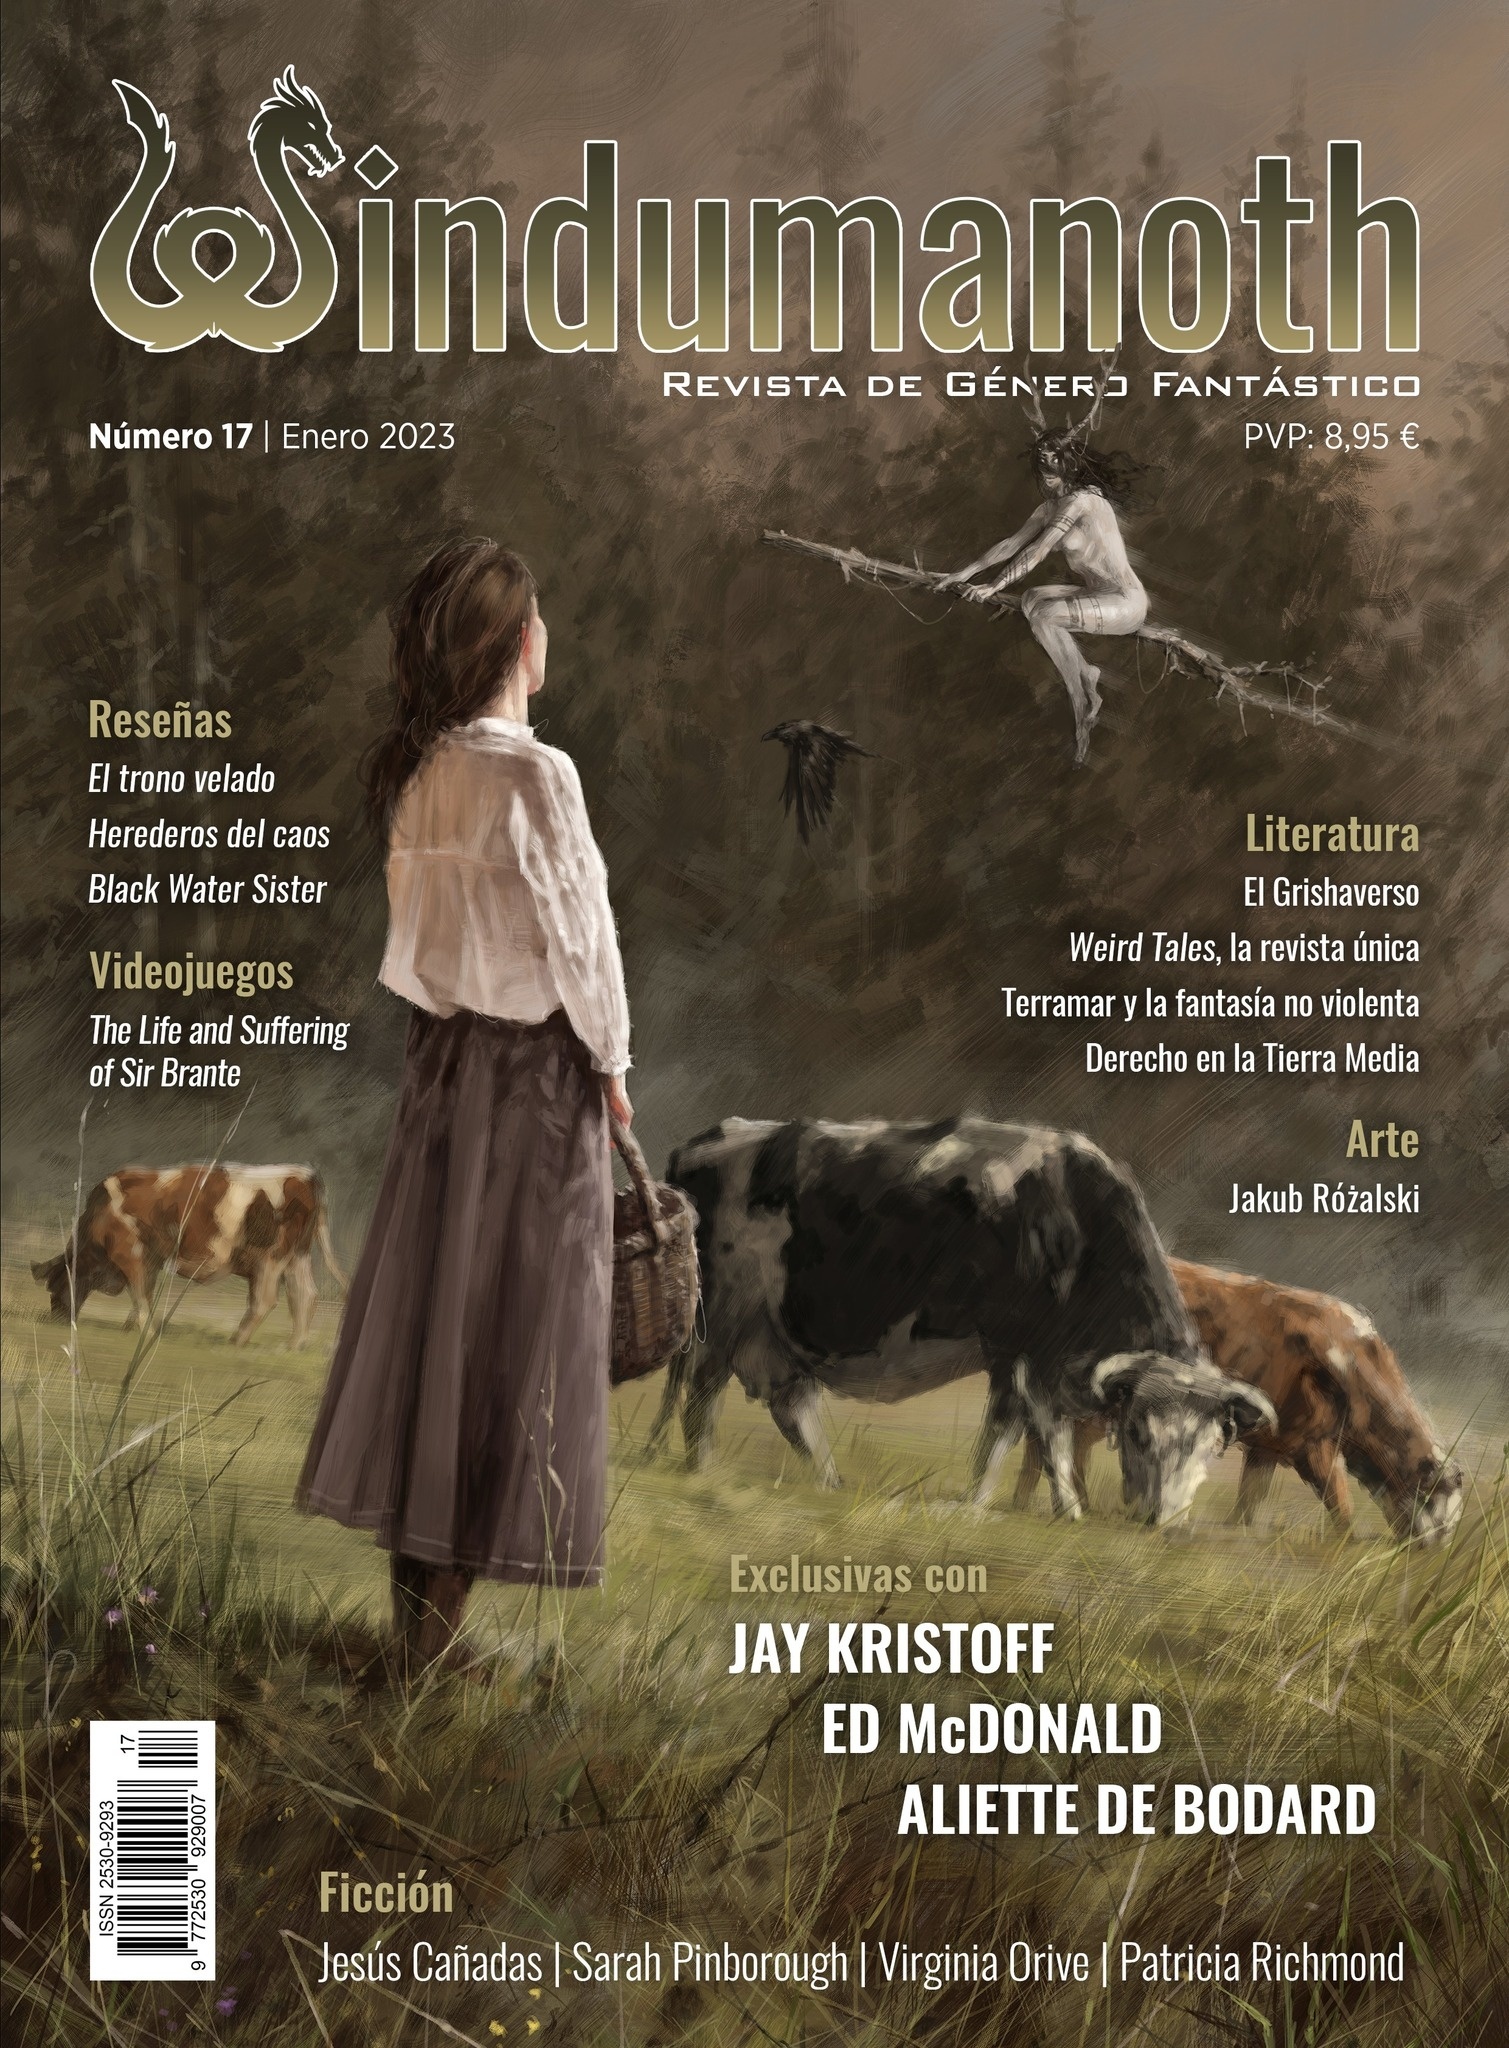 Windumanoth nº 17. Enero 2023 "Revista de género fantástico". 